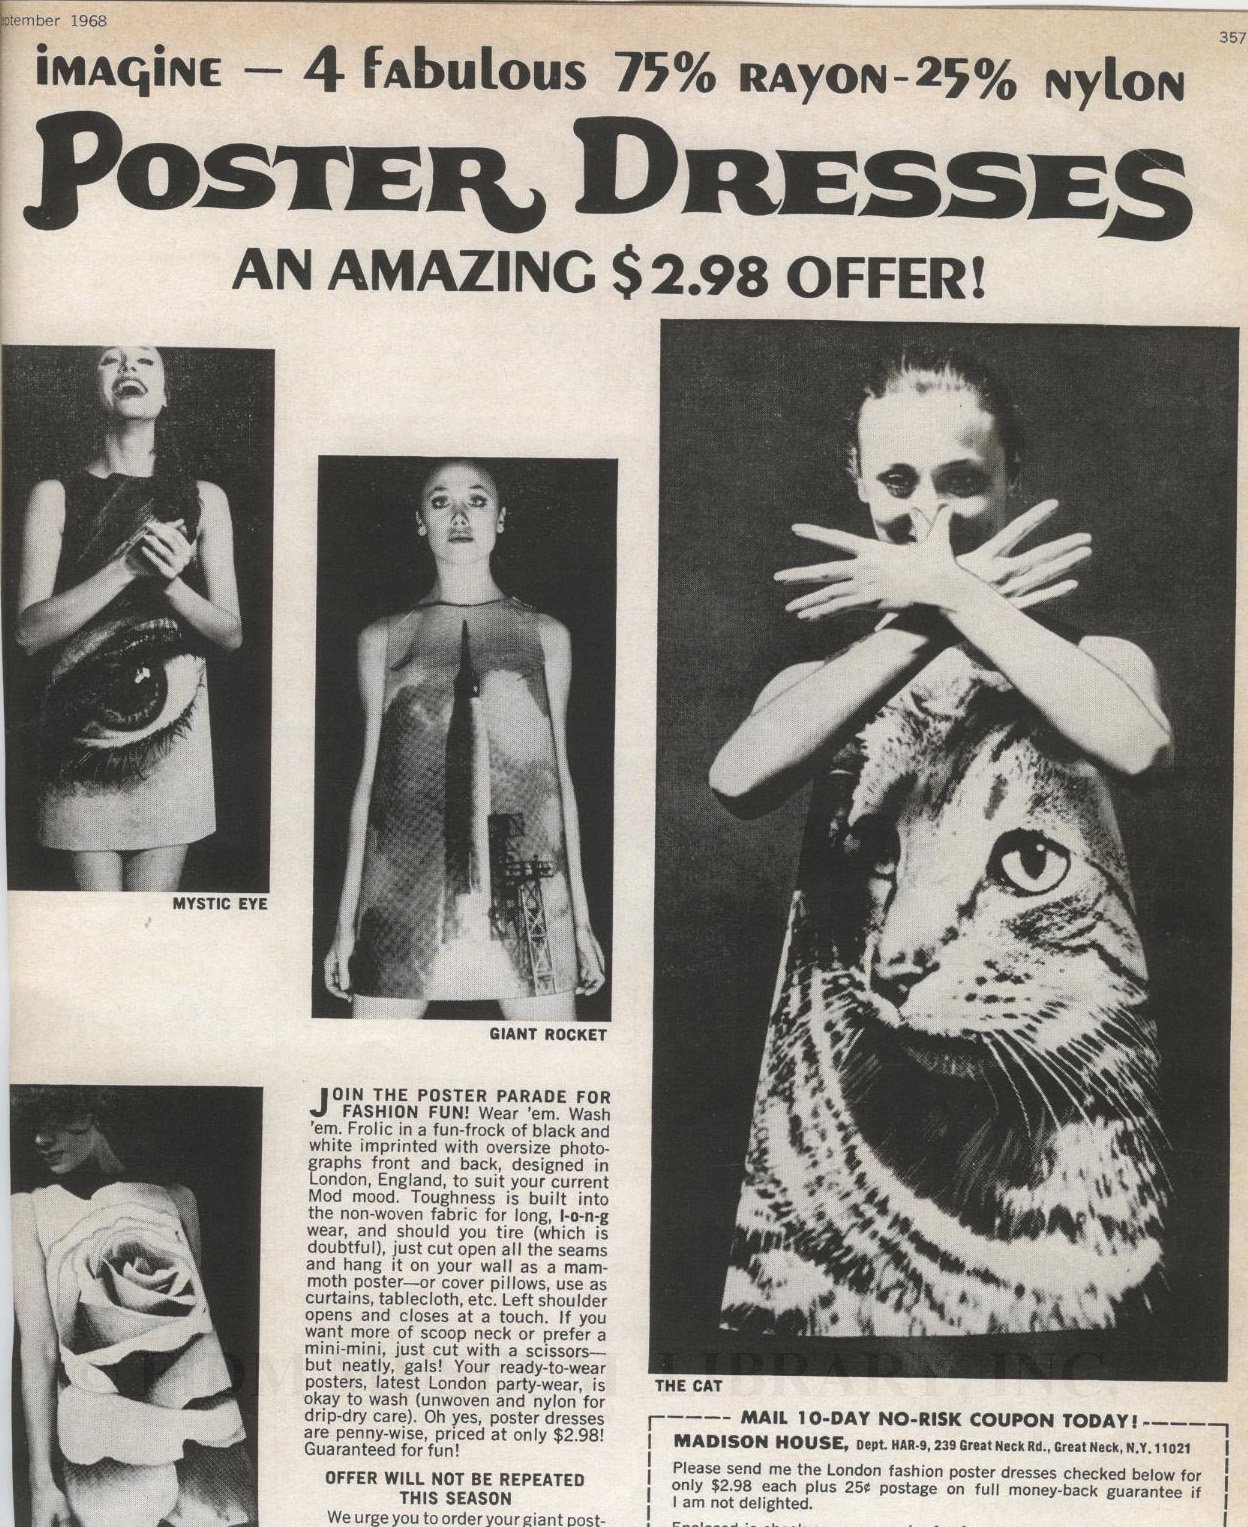 La locura por los vestidos de papel en los ‘60